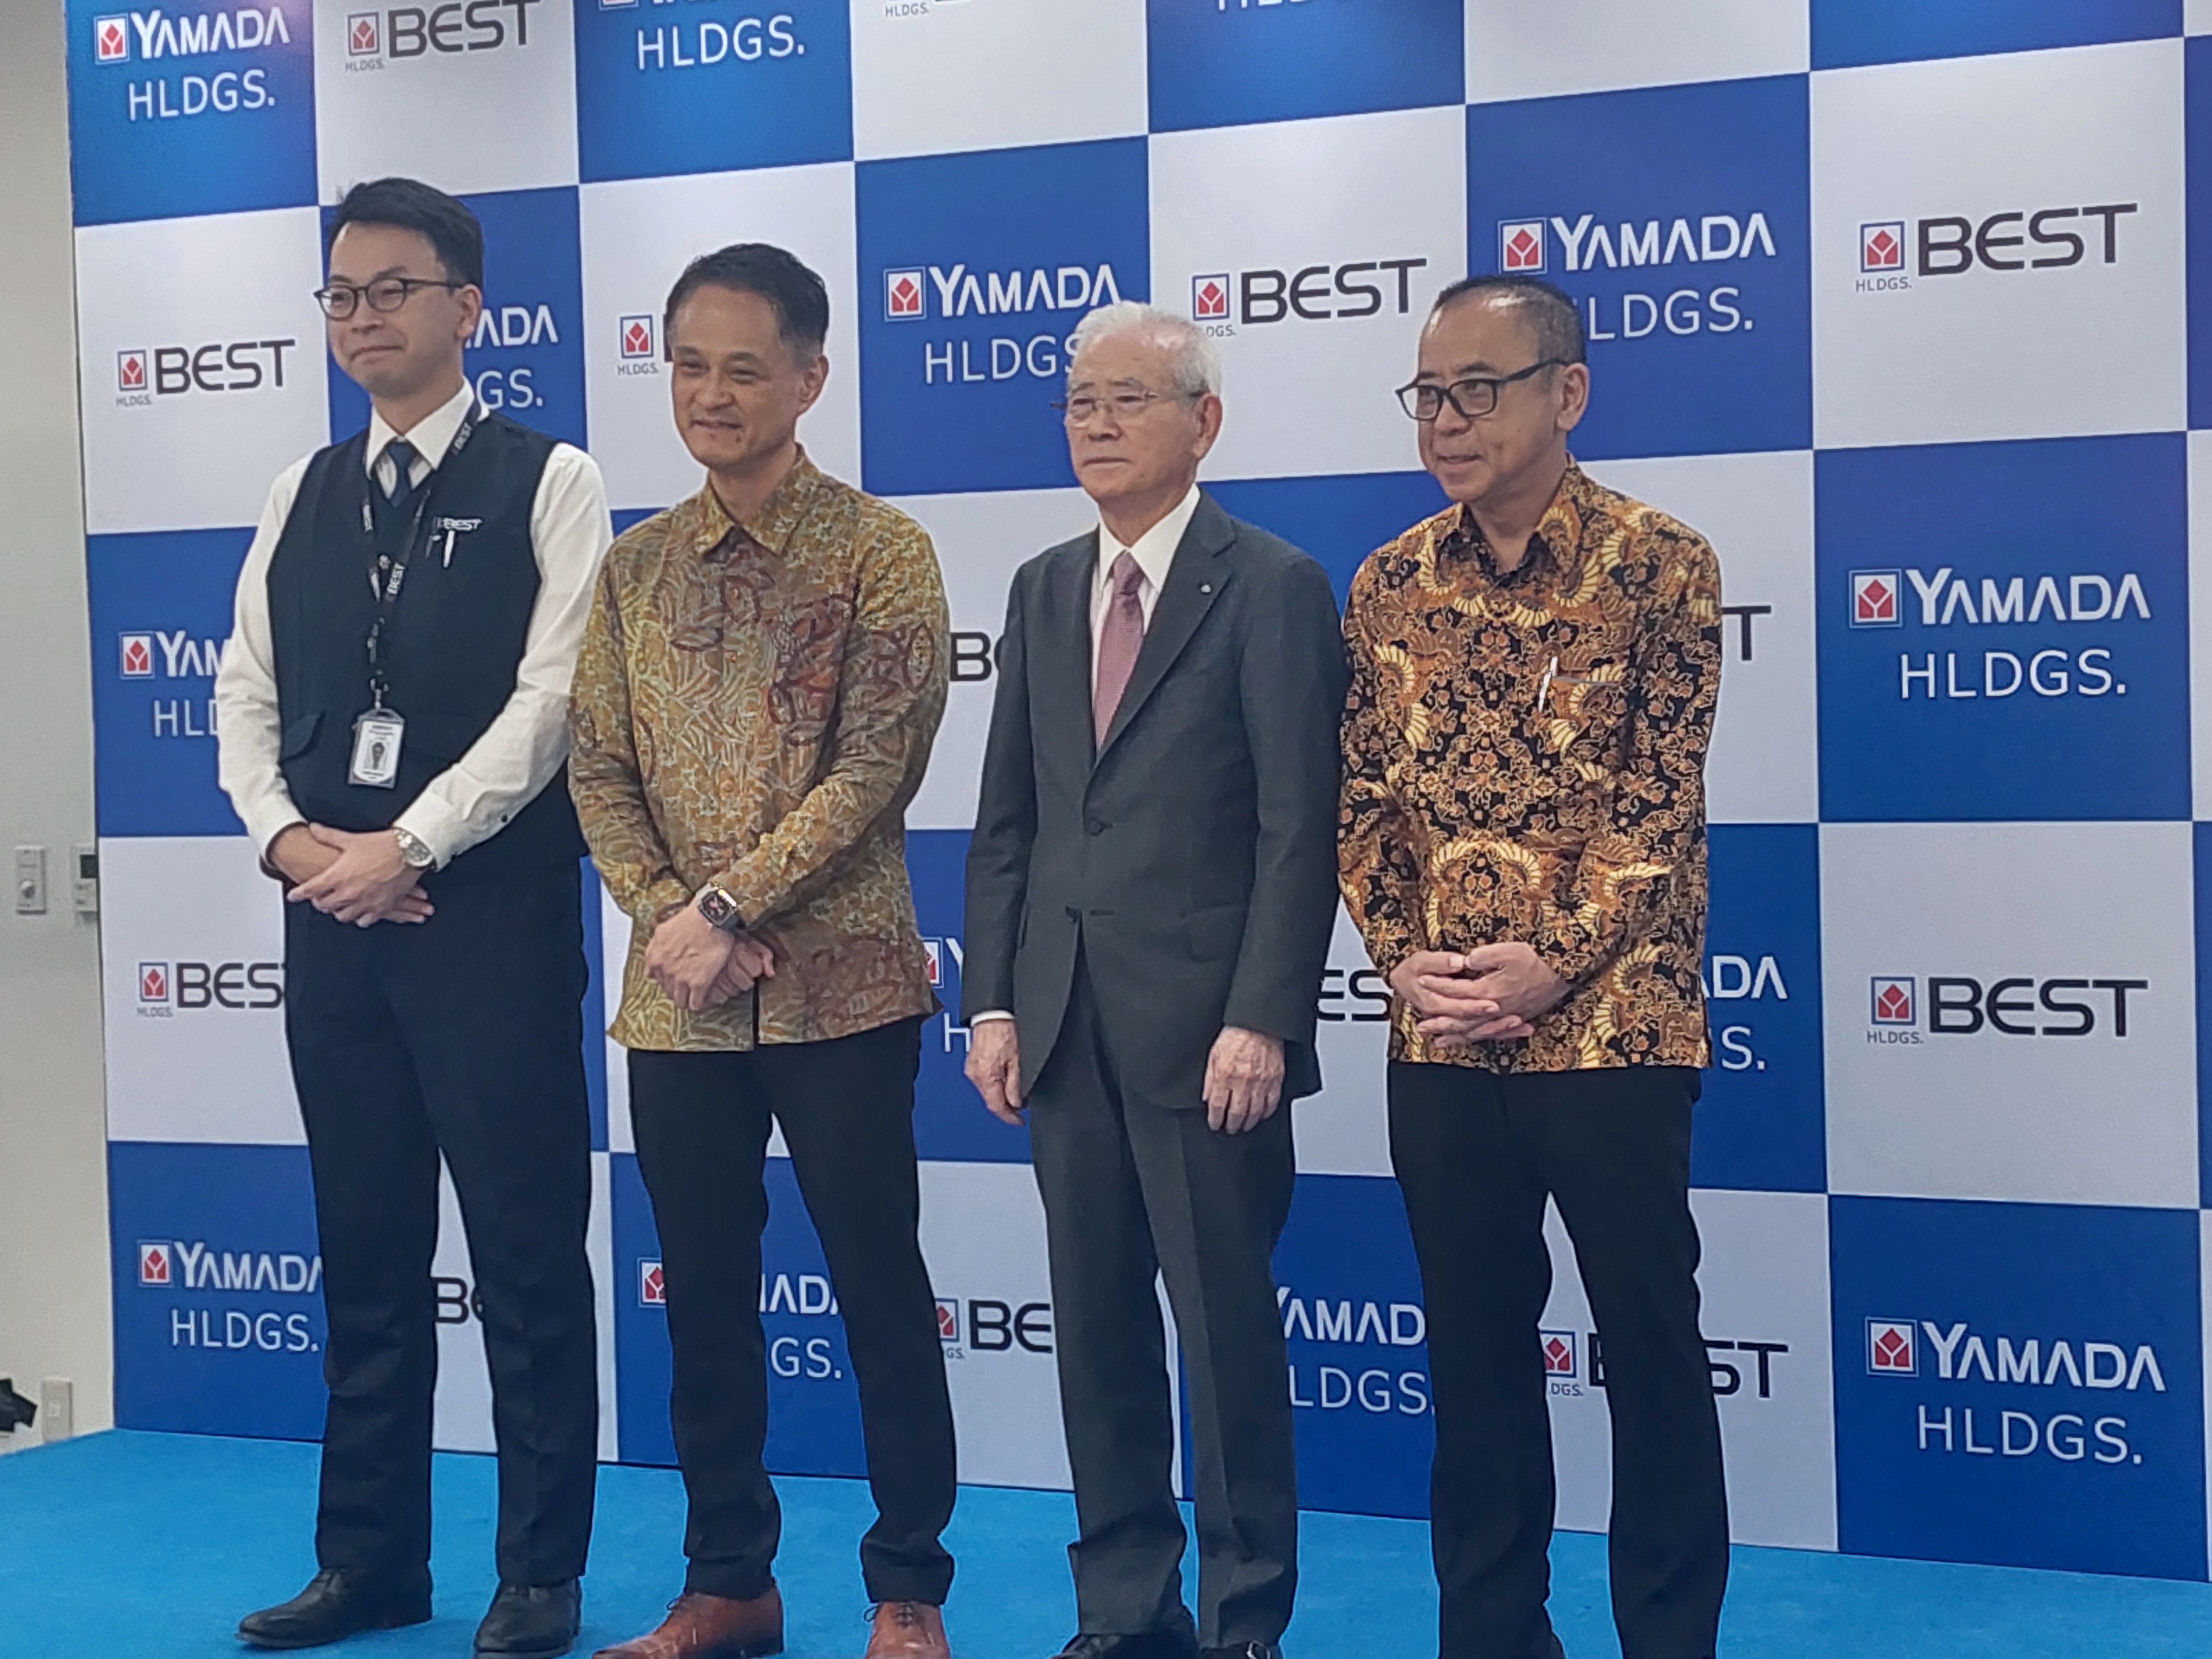 Yamada Best Buka Cabang ke-9 di Indonesia, Jual 15 Ribu Alat Elektronik